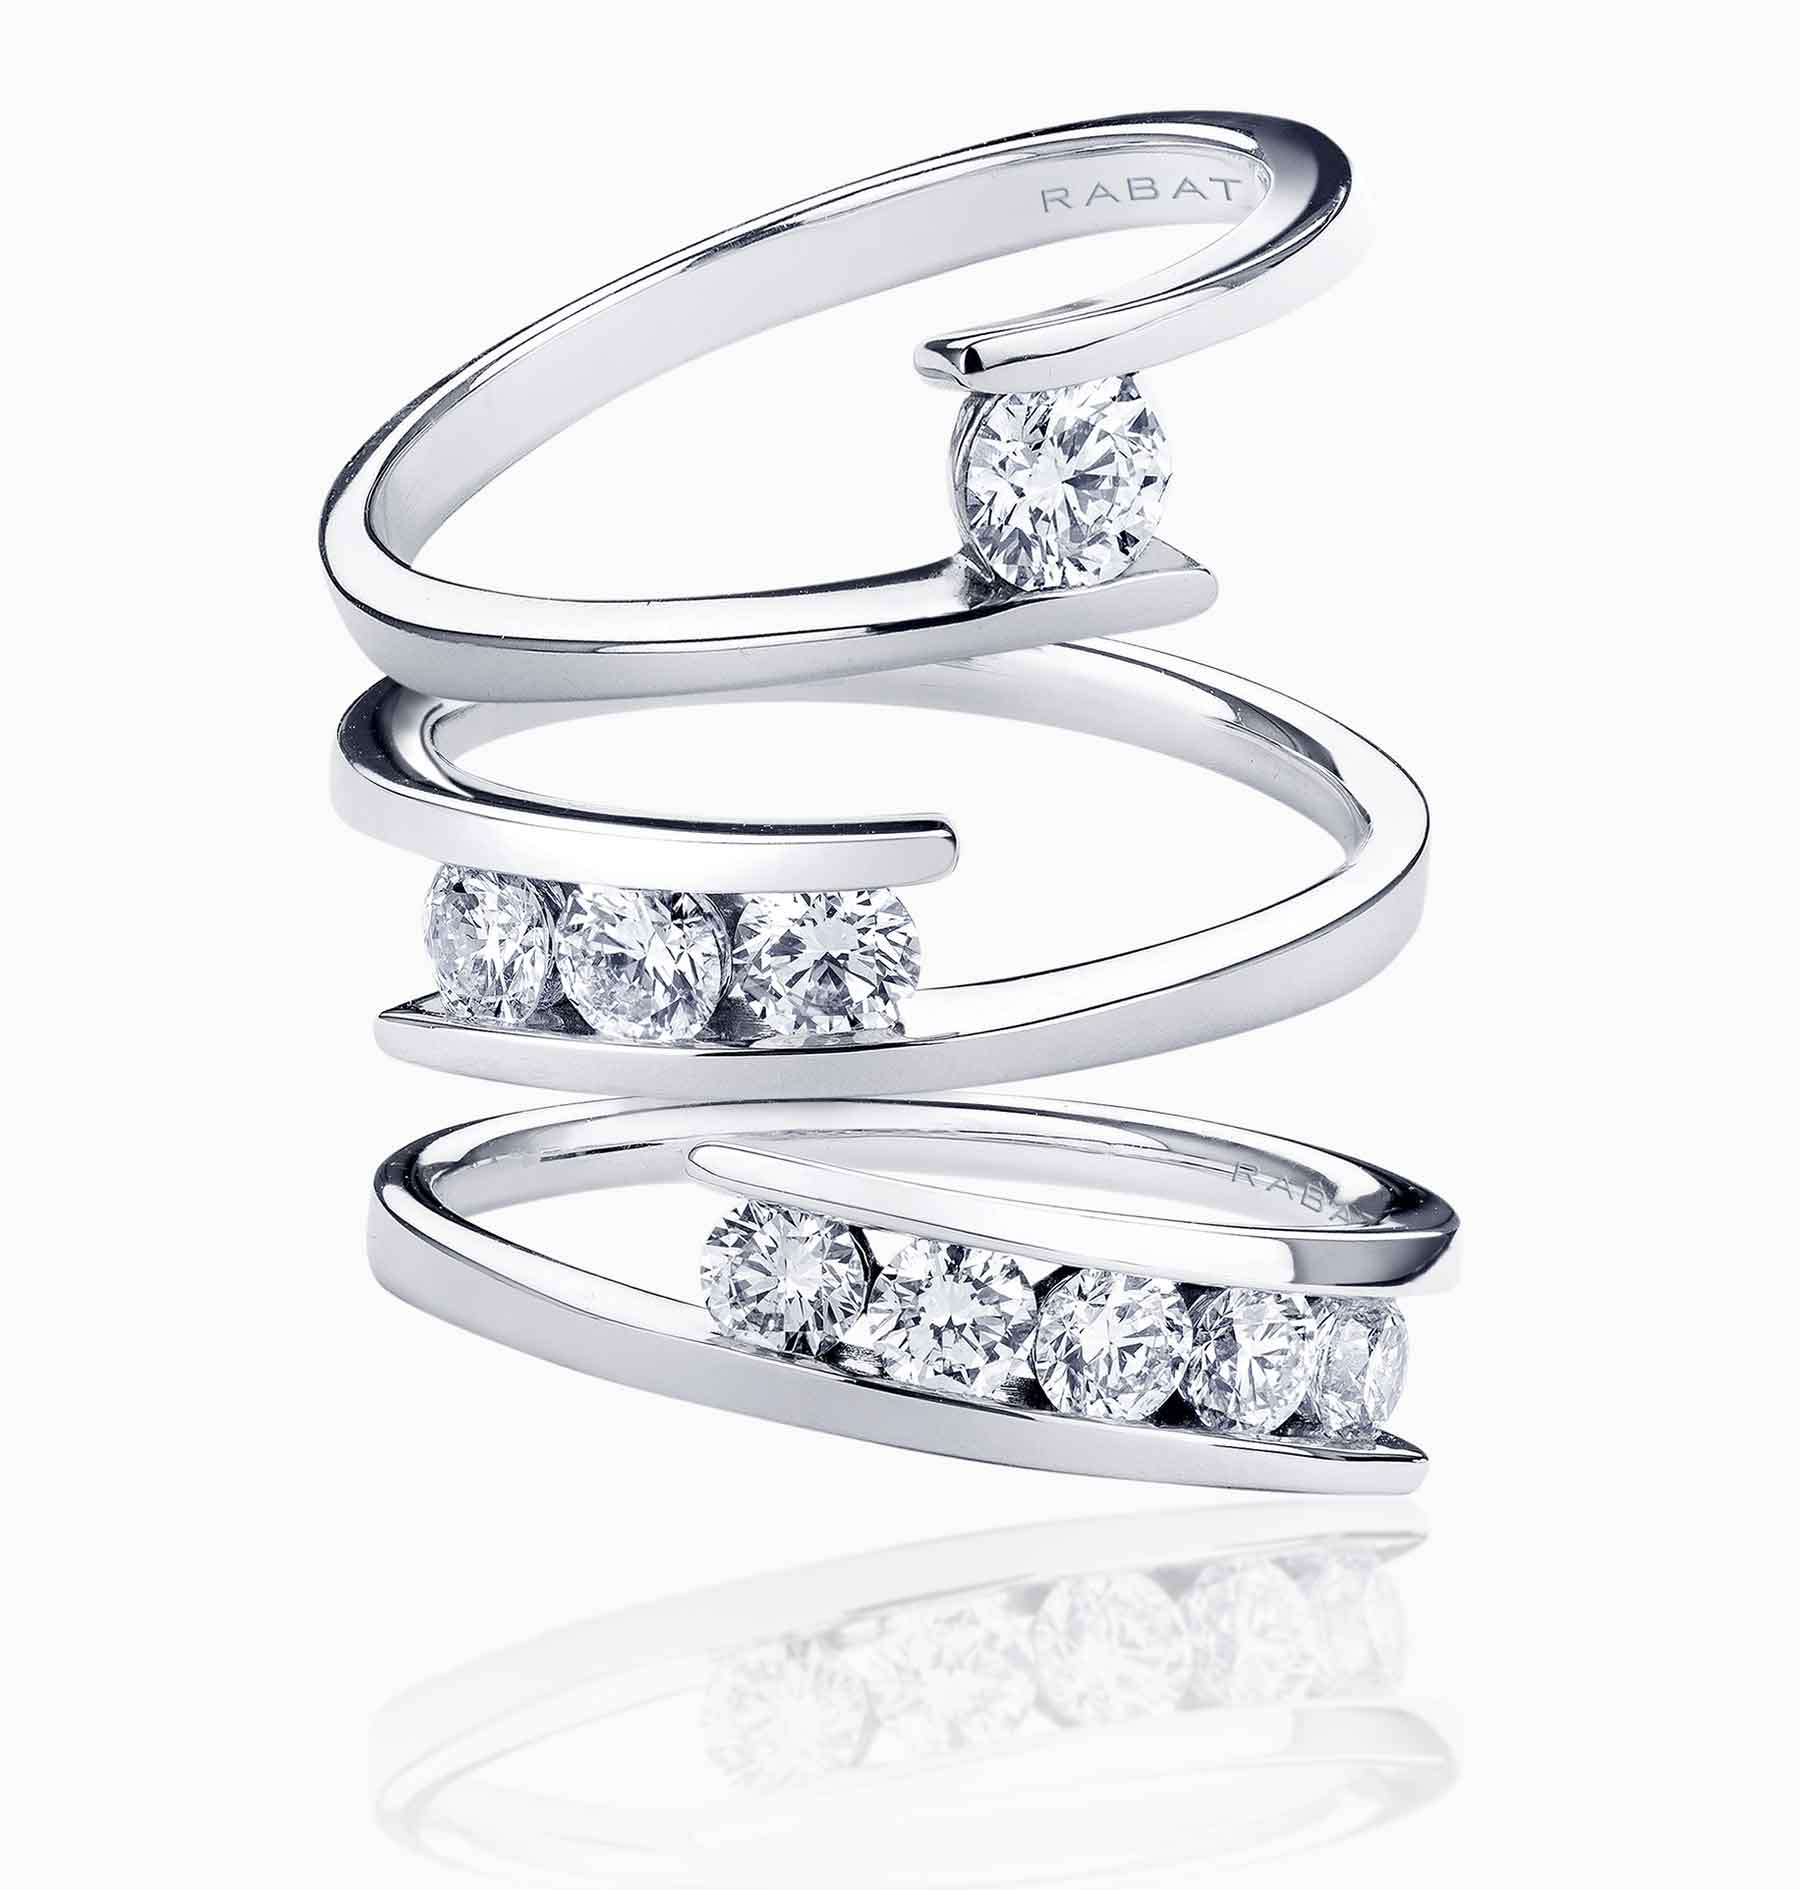 Colección Bridal anillos de compromiso Bridge of Love en Joyería RABAT